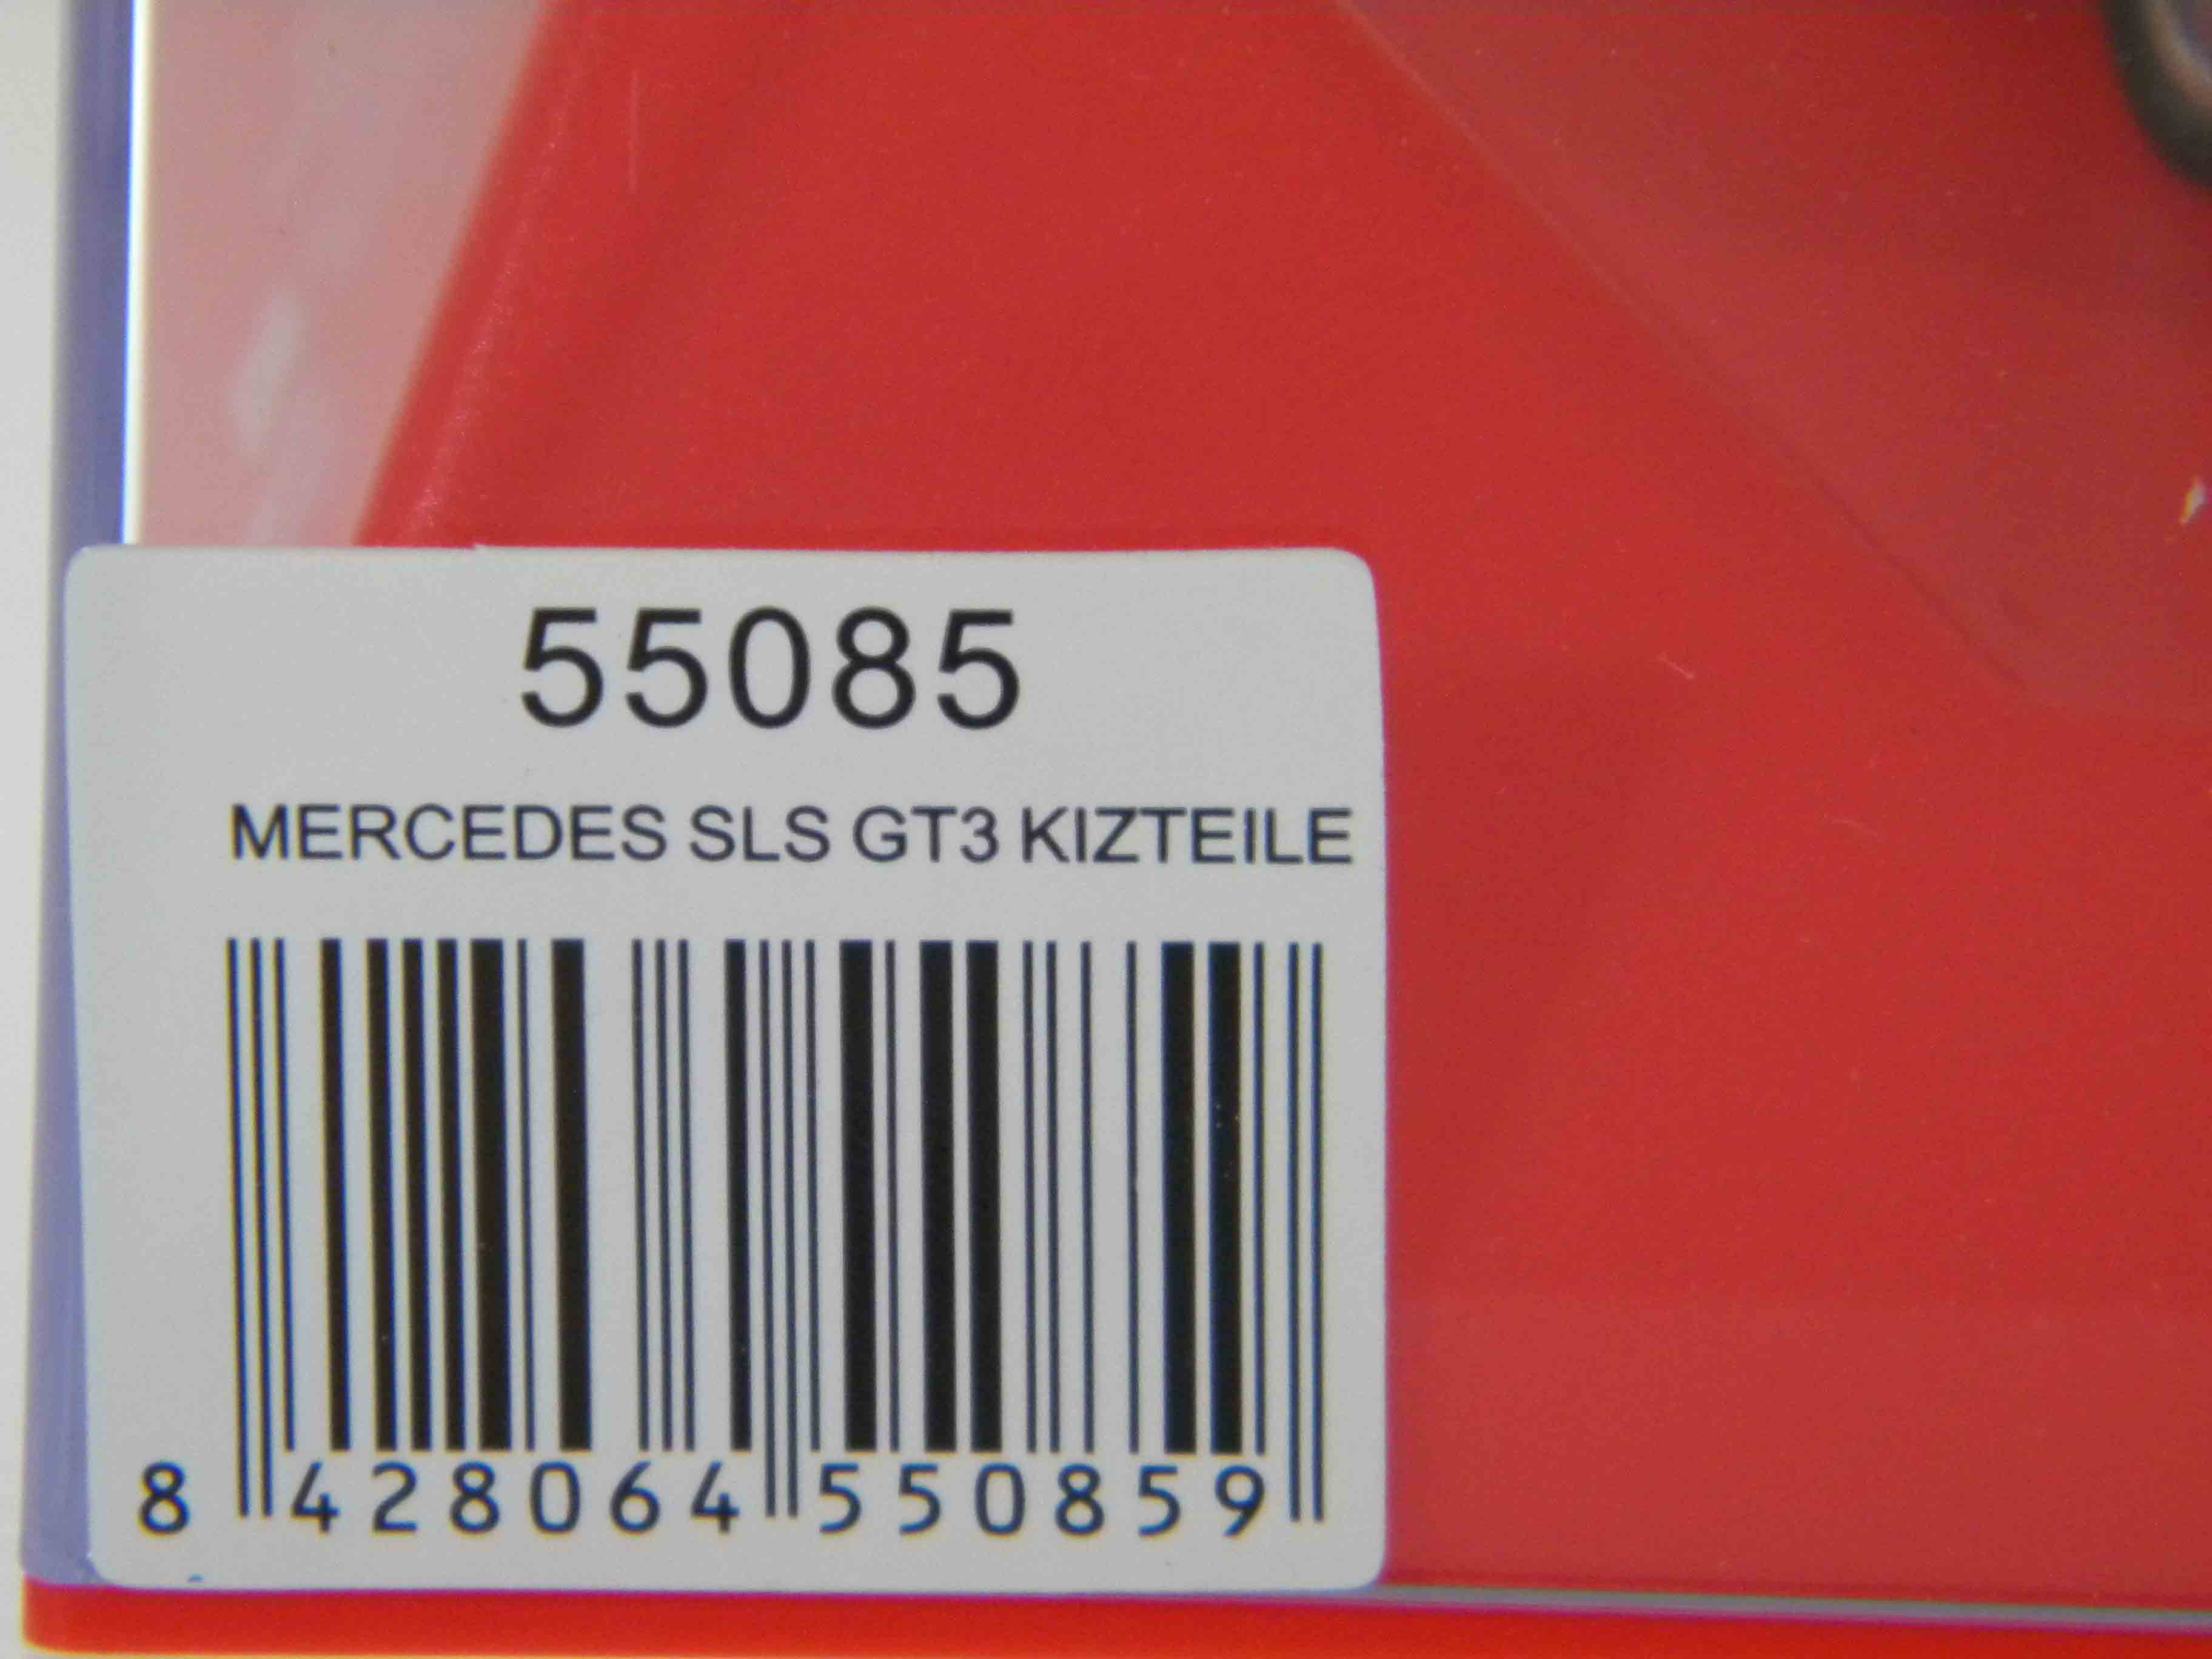 Mercedes SLS Gt3 (55085